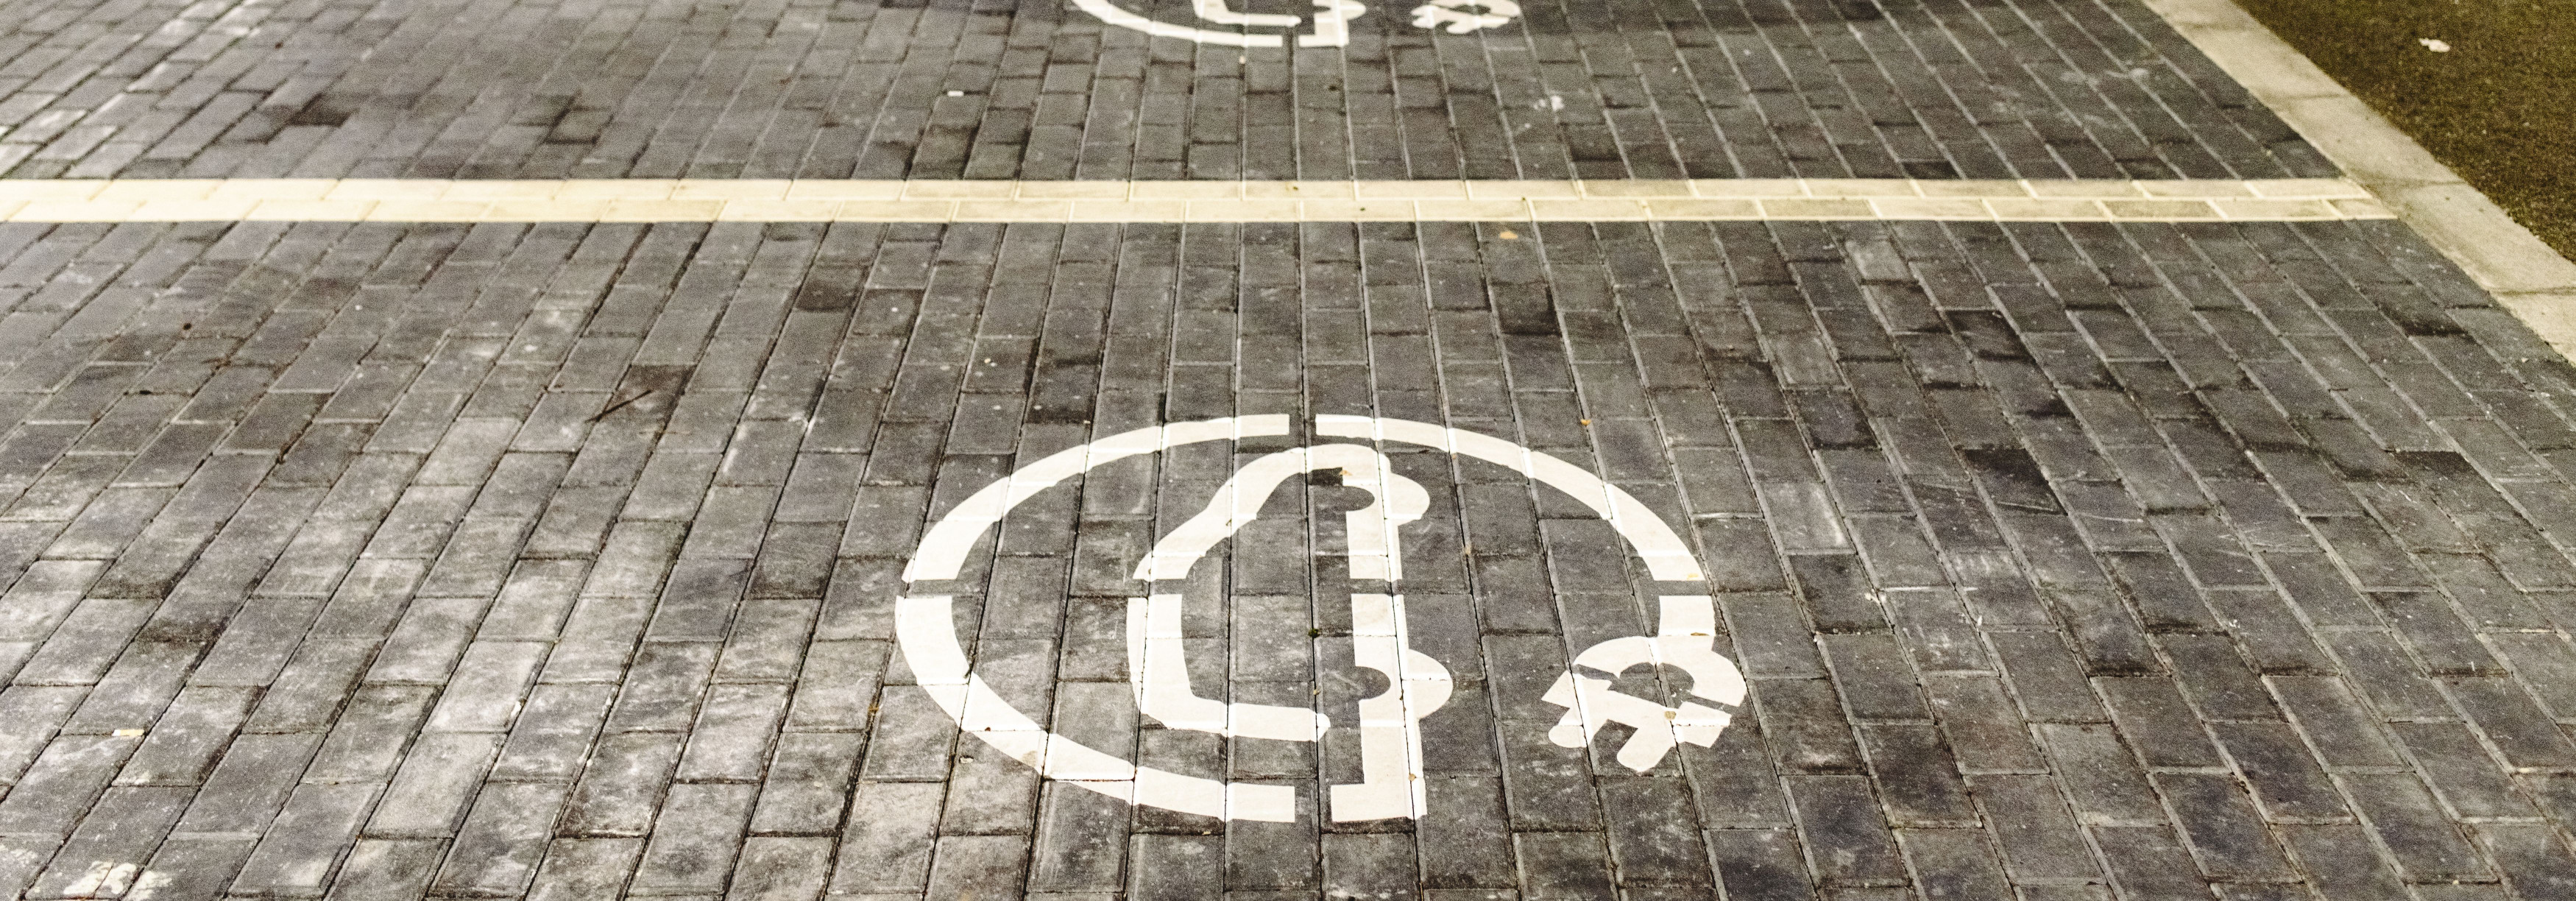 Millised eelised pakub EV laadimisjaamade rakendamine parklatesse?